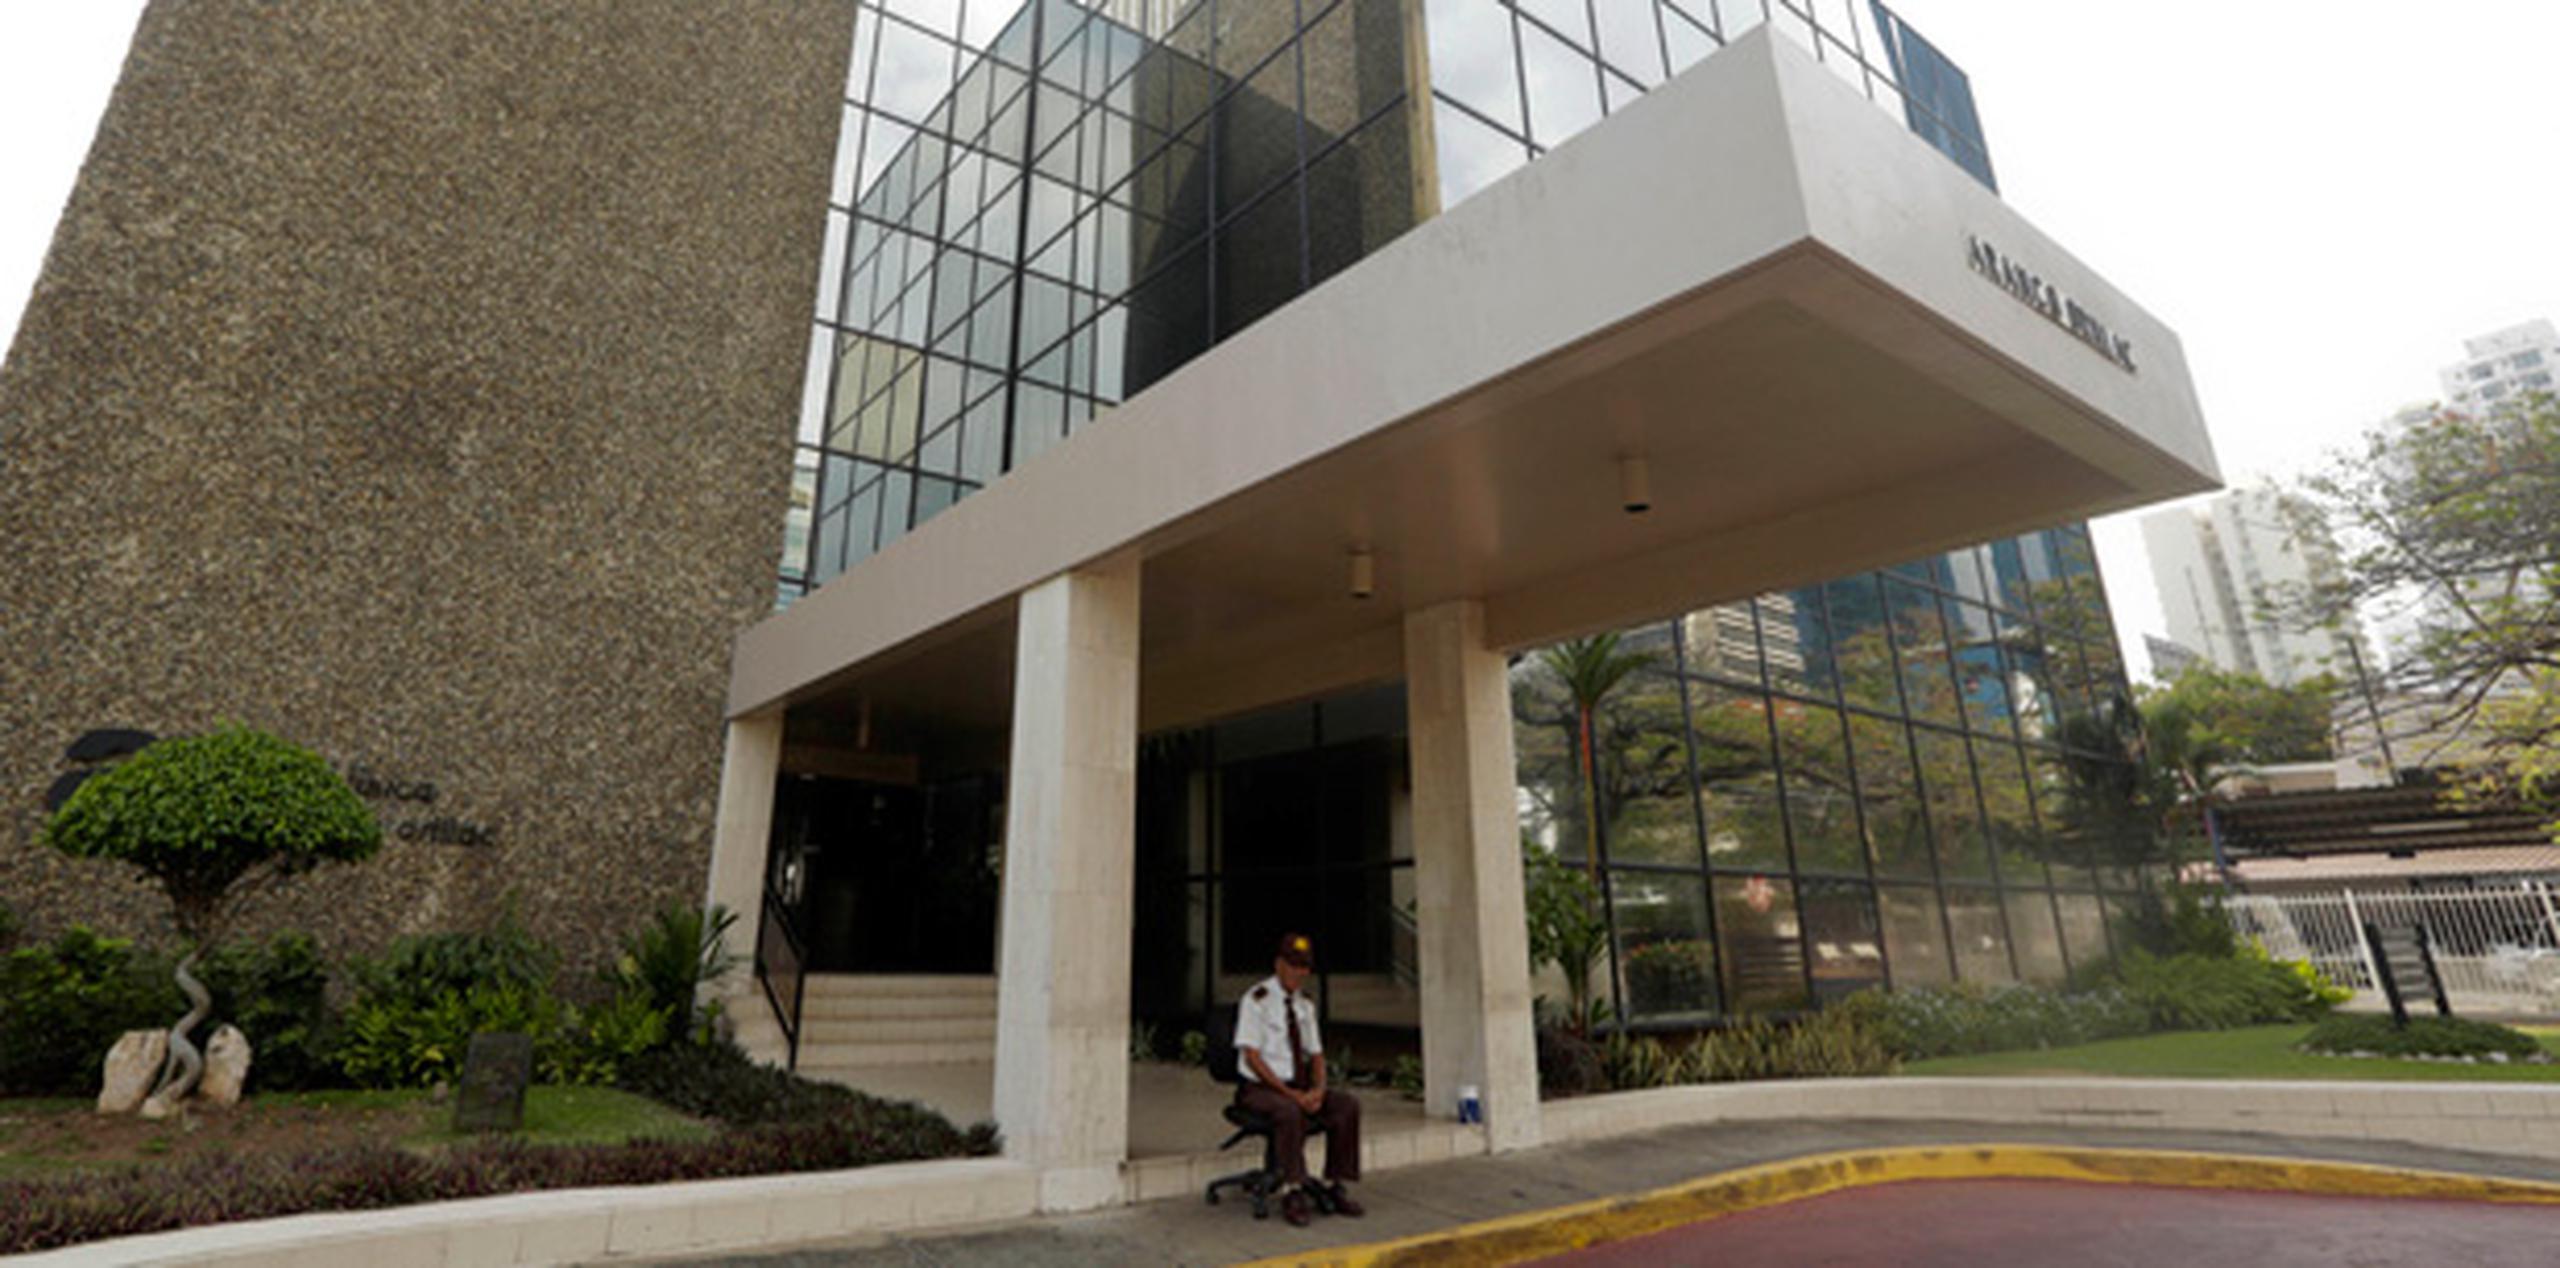 Un guardia vigila la entrada de la firma de abogados Mossack Fonseca en Ciudad de Panamá. (AP)